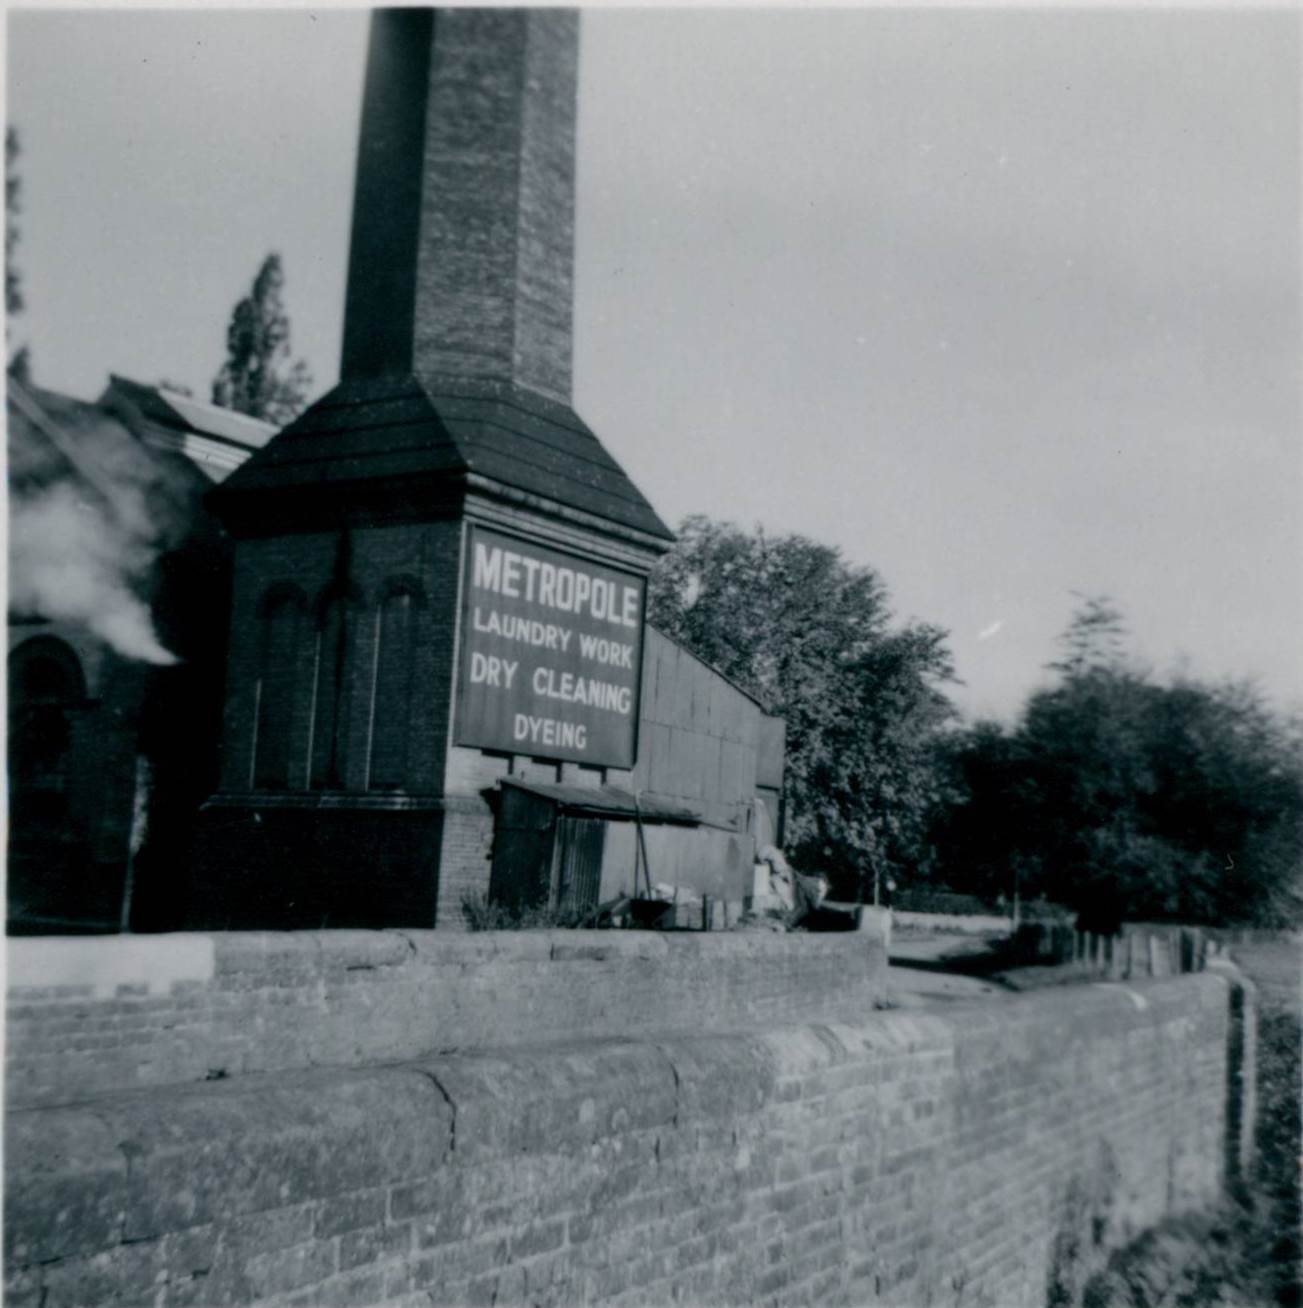 The Metropole Laundry, Powick Mills in 1951